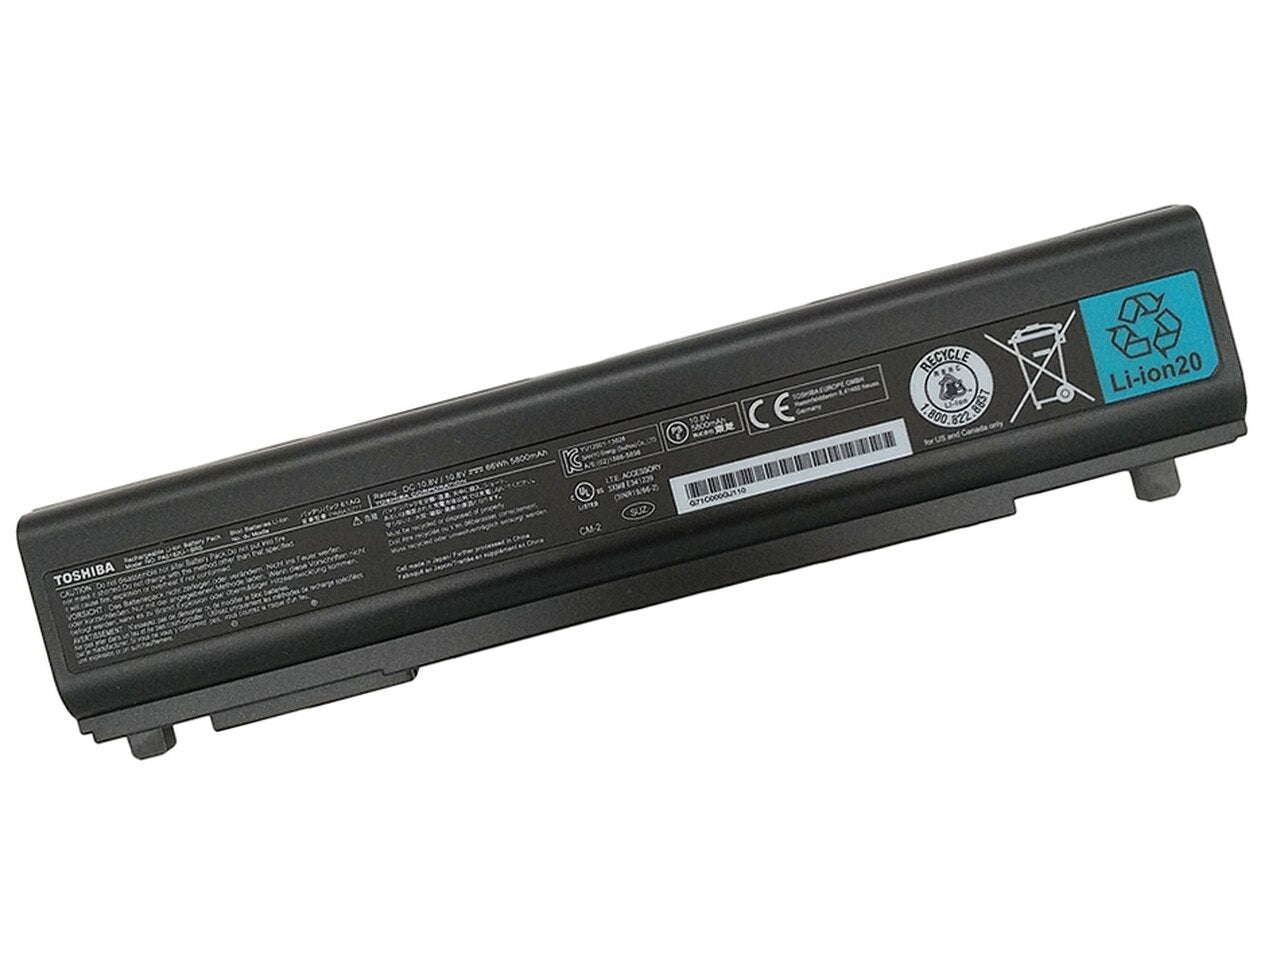 Toshiba PA5162U-1BRS Laptop Battery For PA5163U-1BRS, PABAS280, PA5174U-1BRS, PORTEGE R30 Series